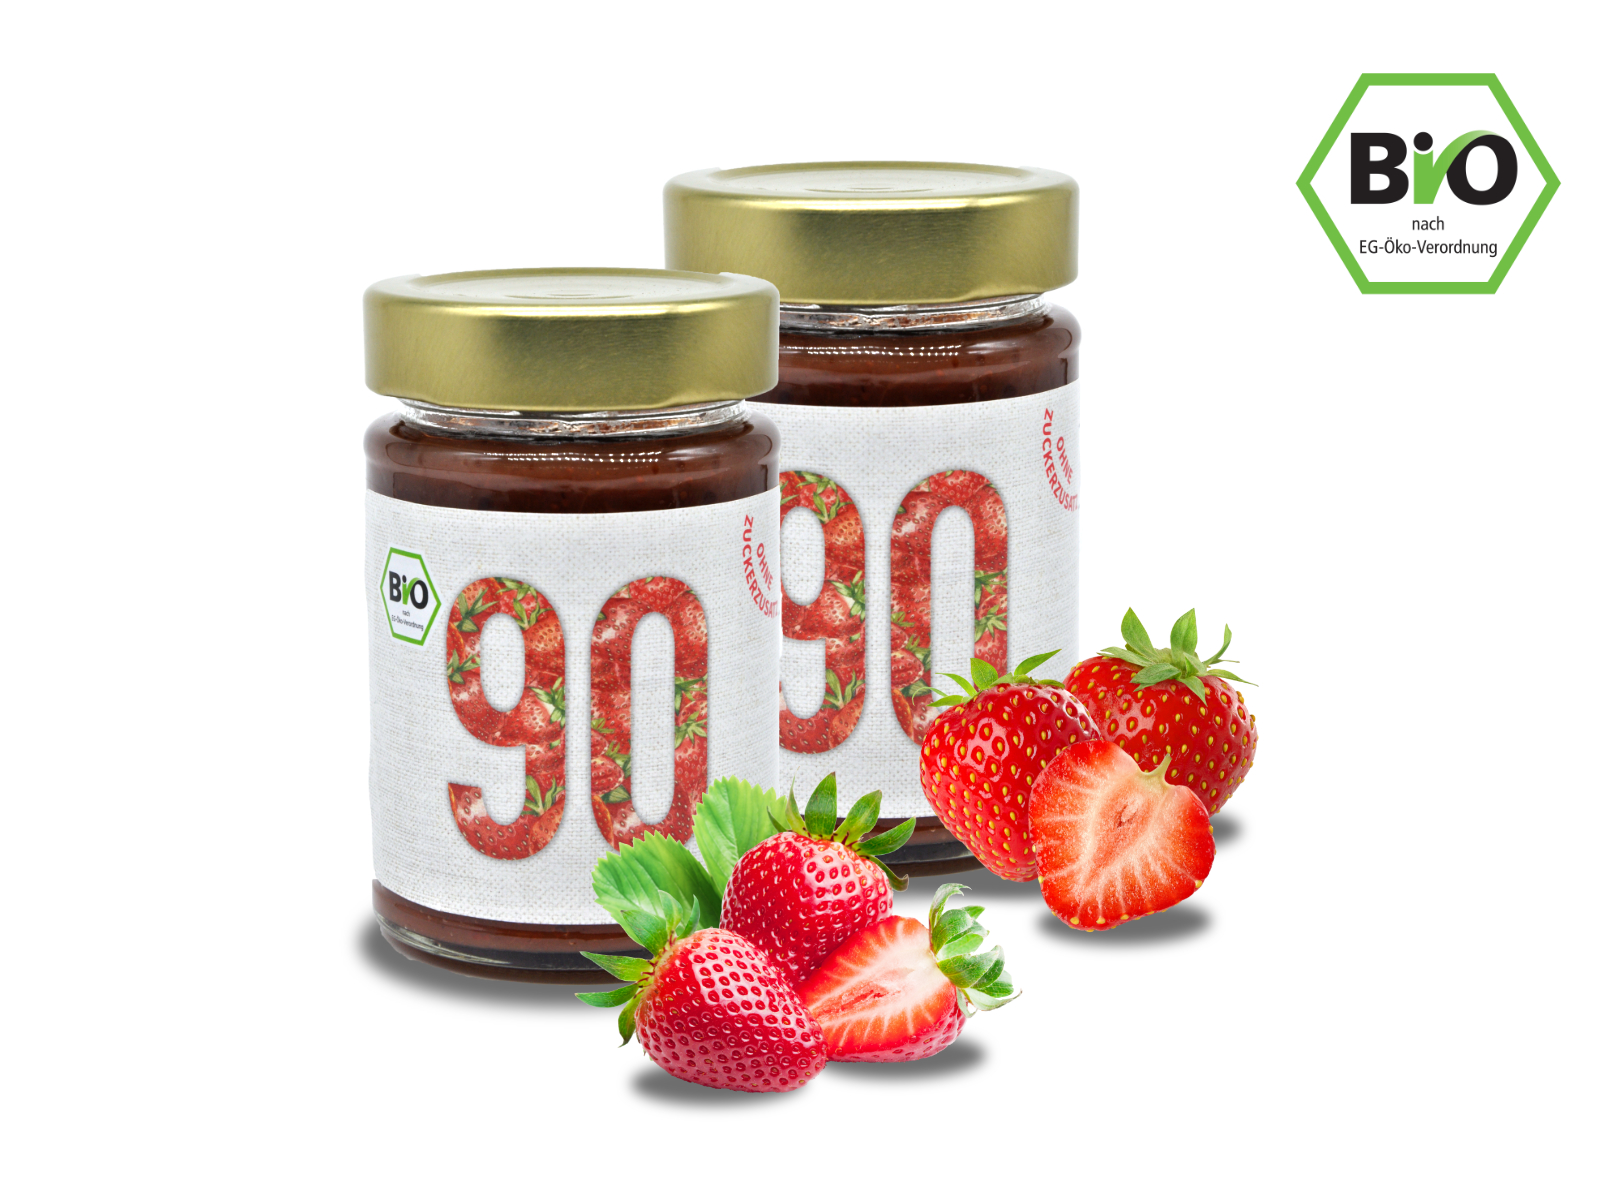 2x Sibani BIO 90% Fruchtaufstrich, Erdbeere, mit Erythrit* gesüßt, 180g